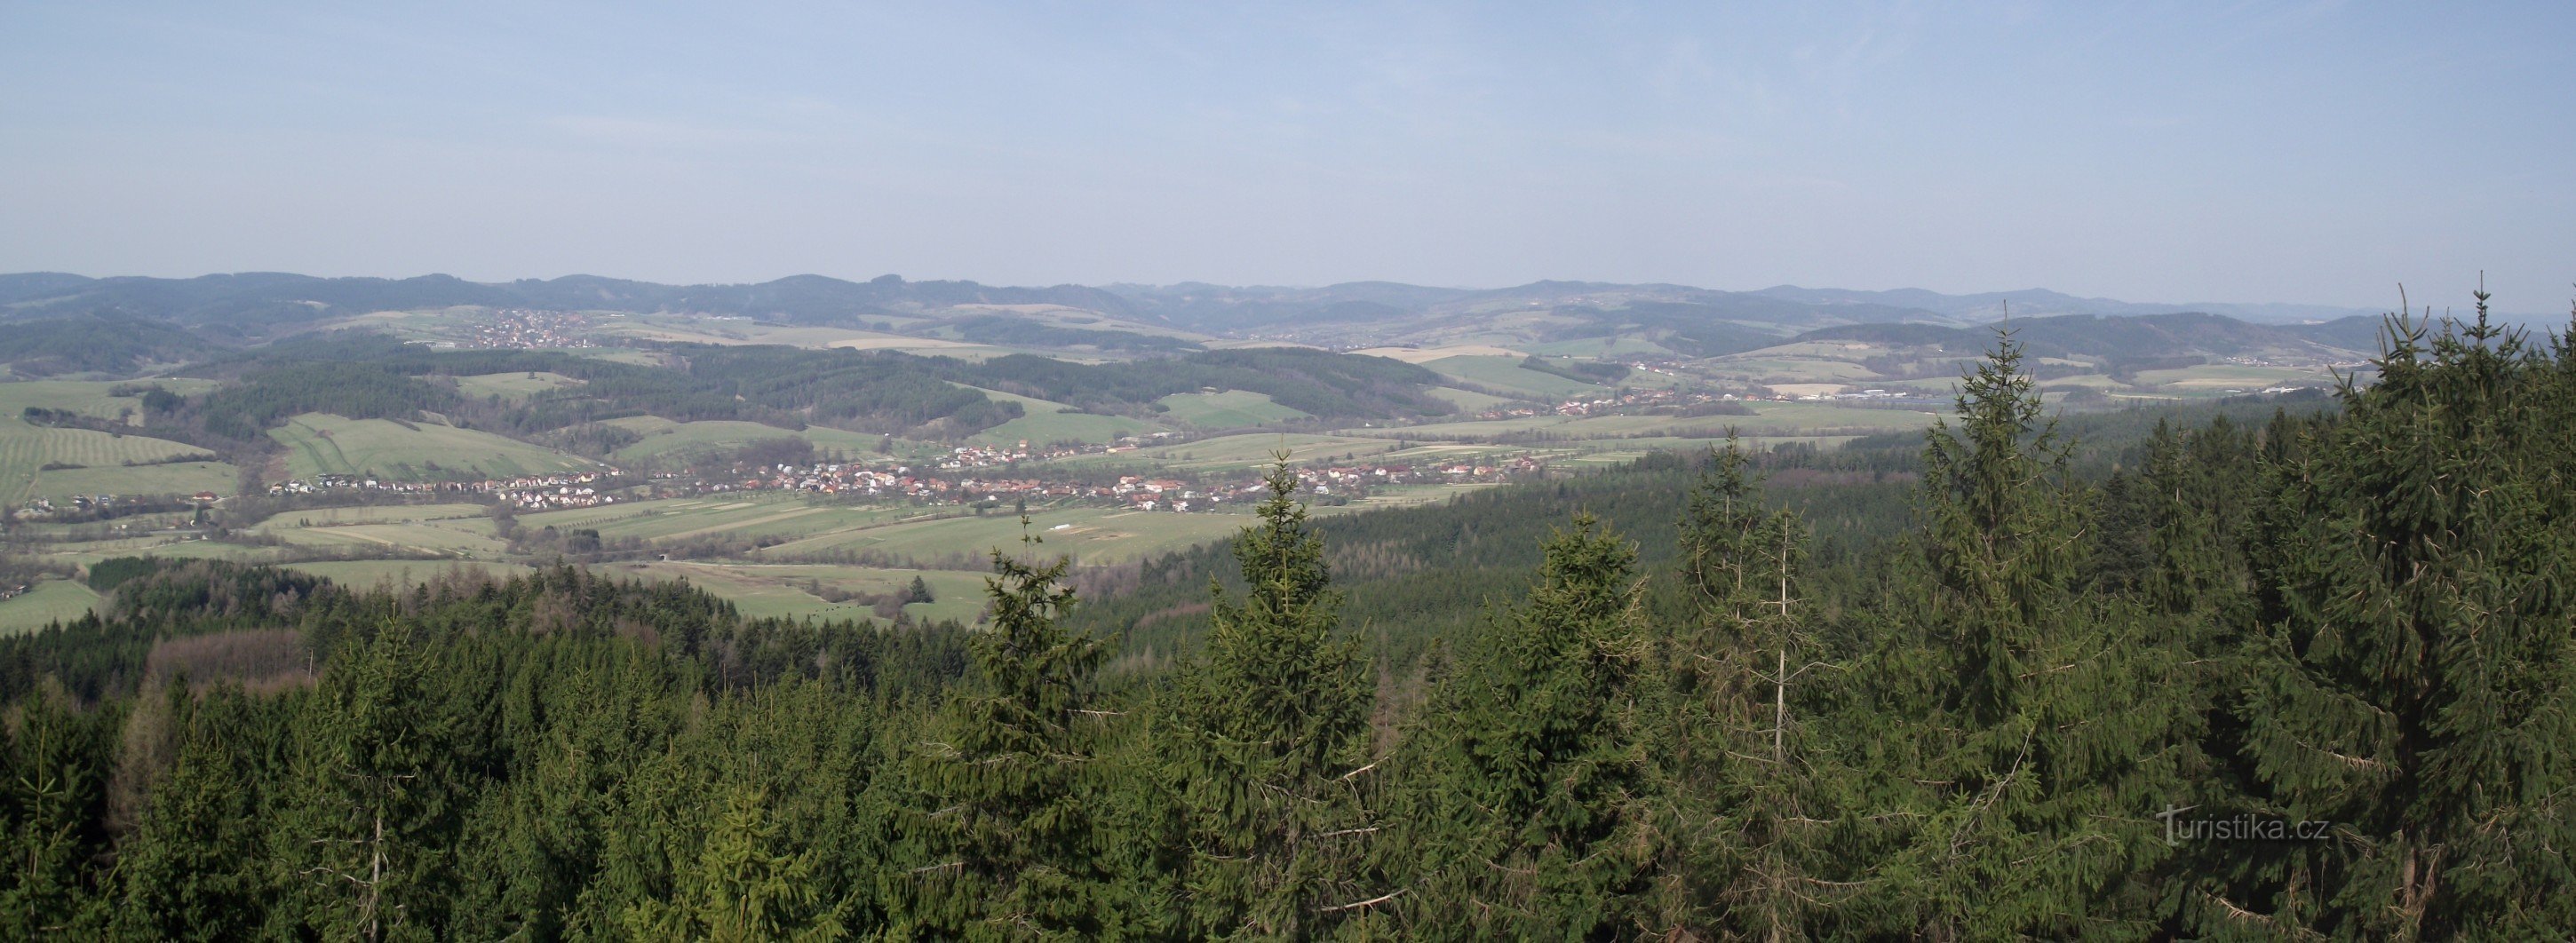 pogled s osmatračnice na južnu Vlašku i brda Vizovické